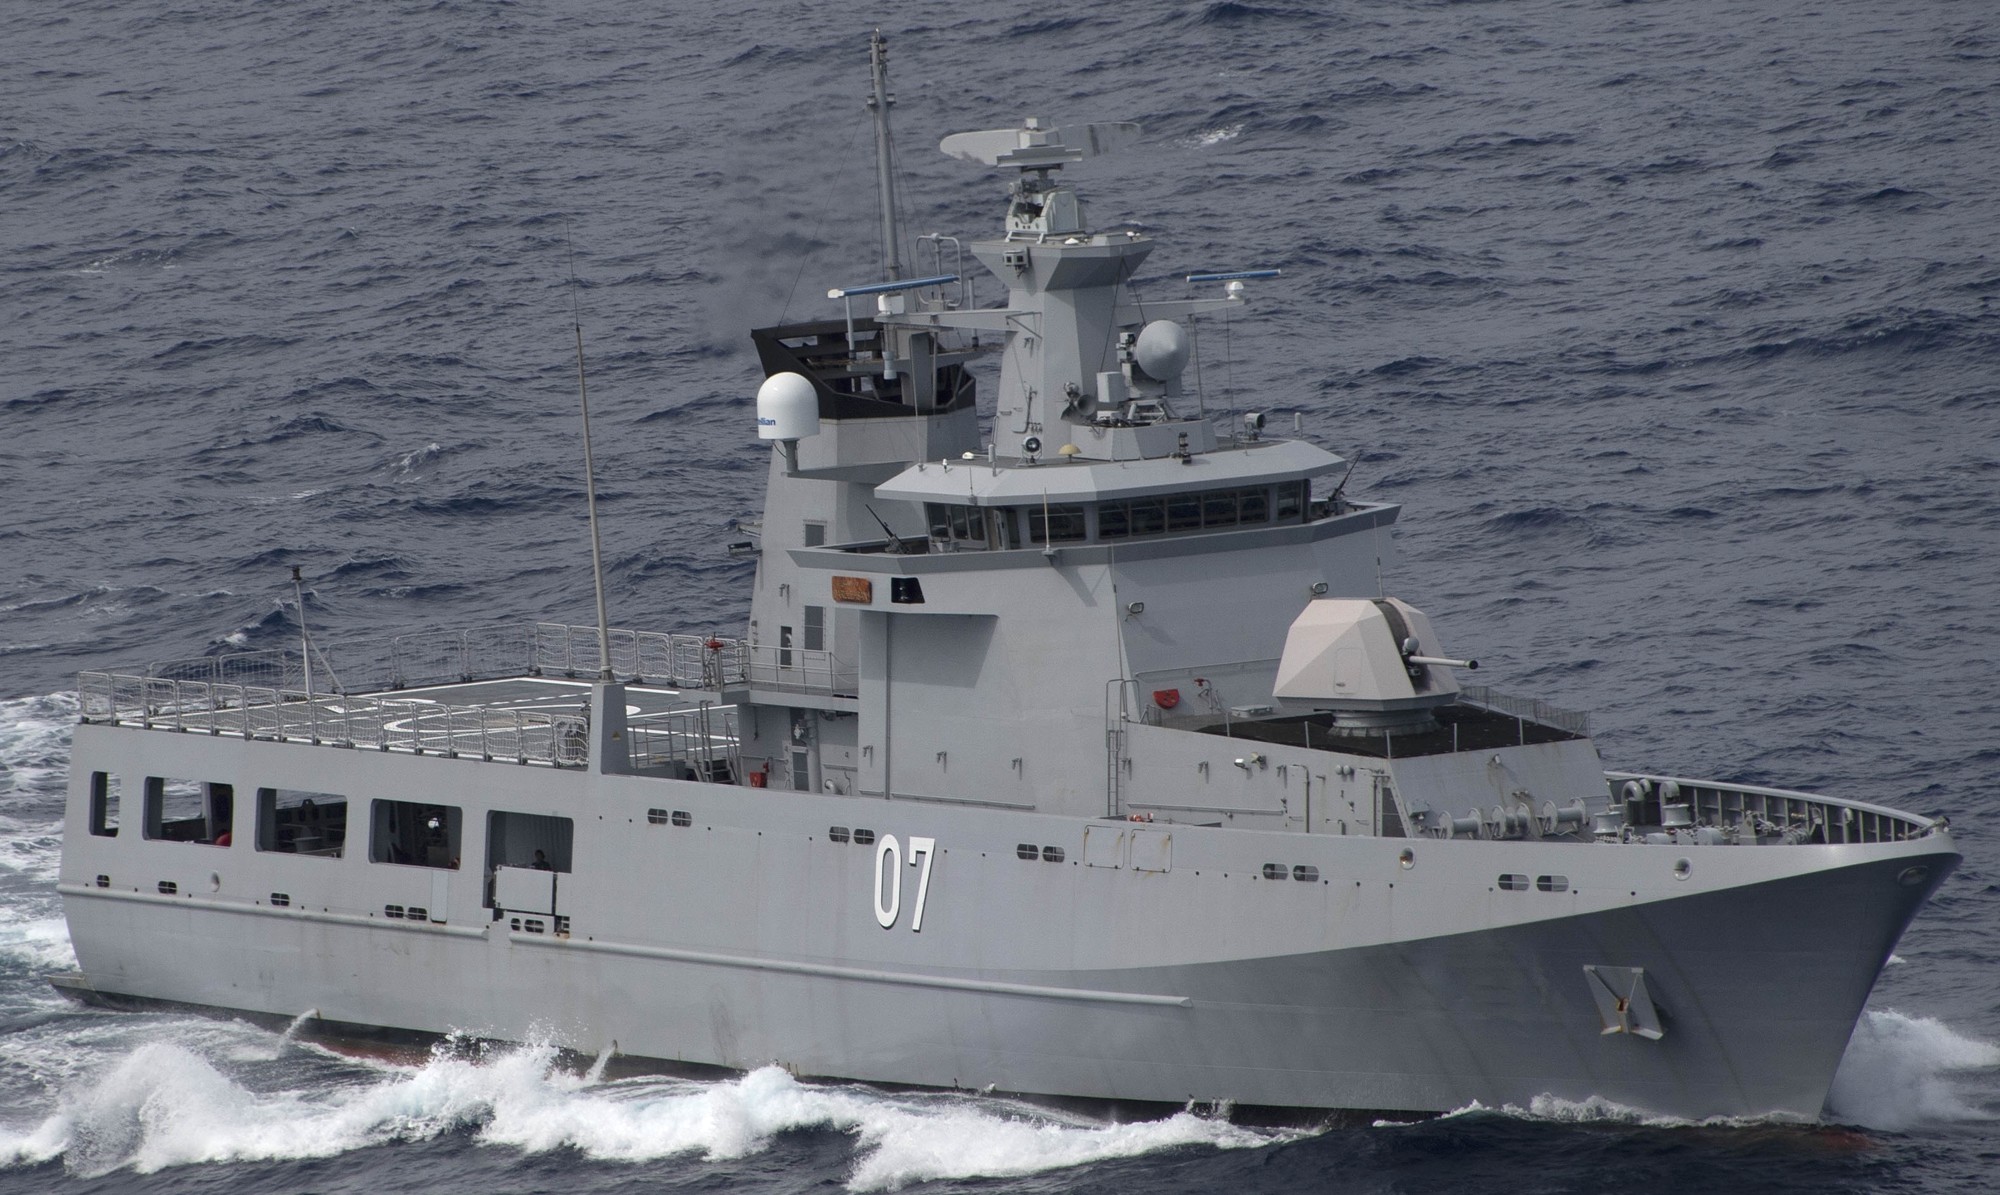 opv 07 kdb darulehsan offshore patrol vessel darussalem class royal brunei navy 07